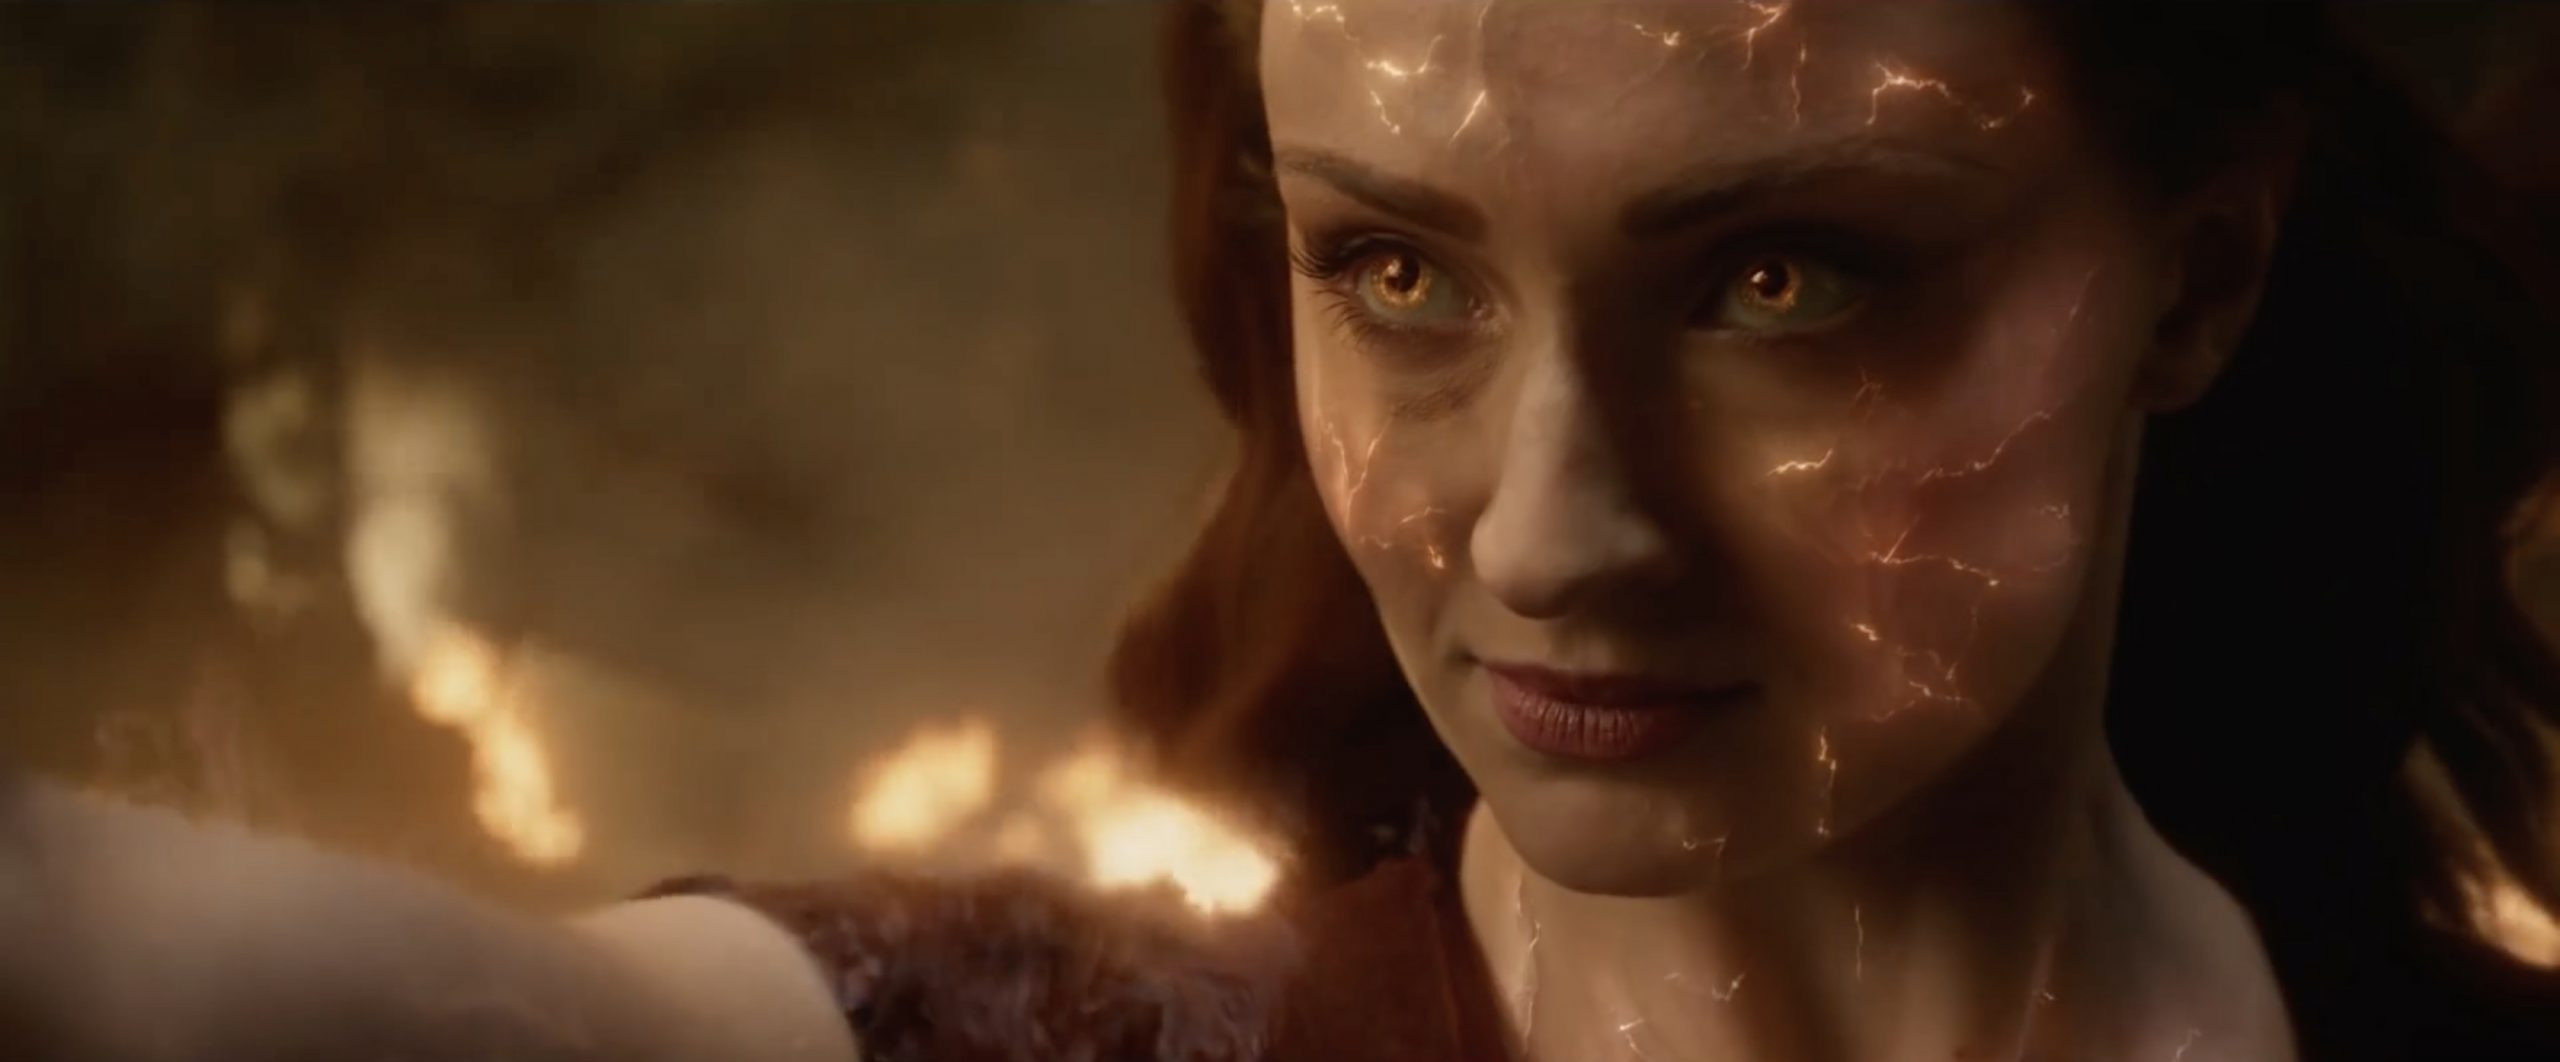 Trailer cuối cùng của X-Men: Dark Phoenix – Phượng hoàng trỗi dậy, dị nhân sụp đổ